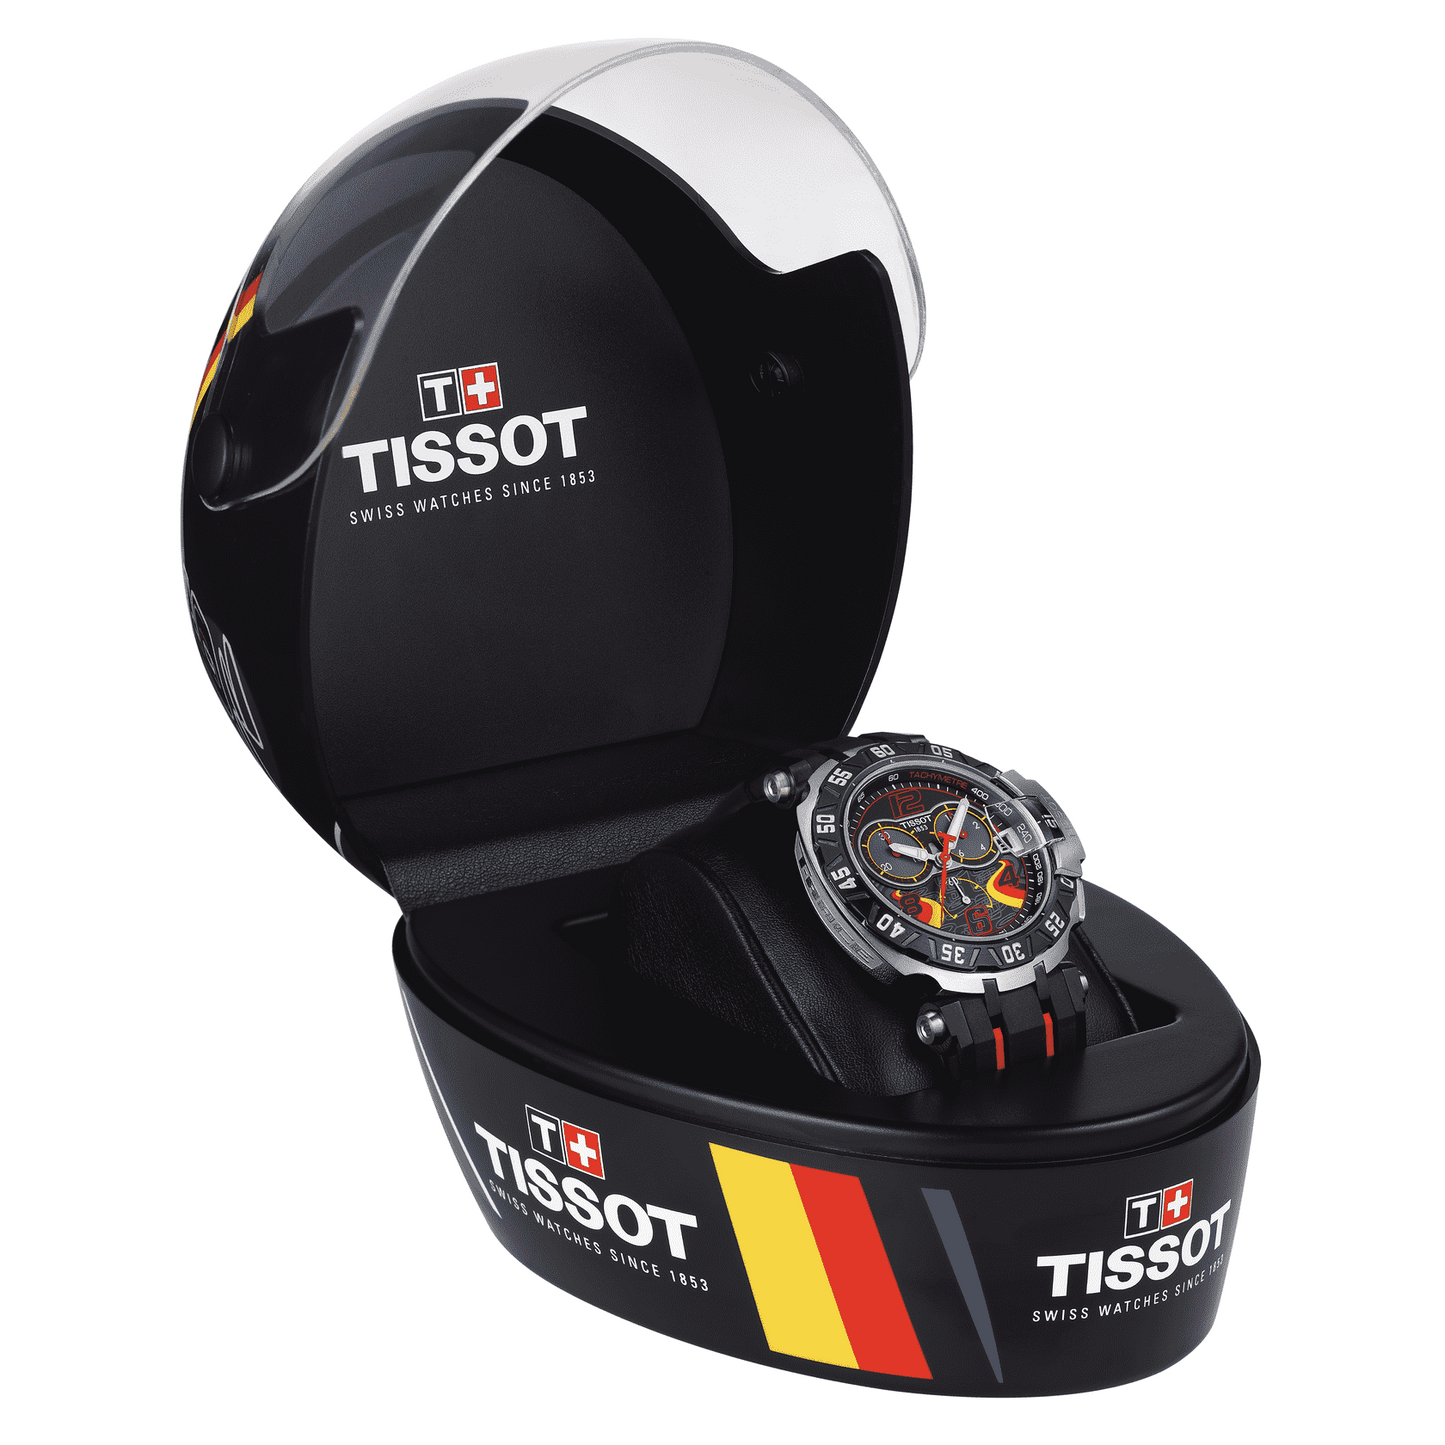 Tissot T-Race Stefan Bradl 2016